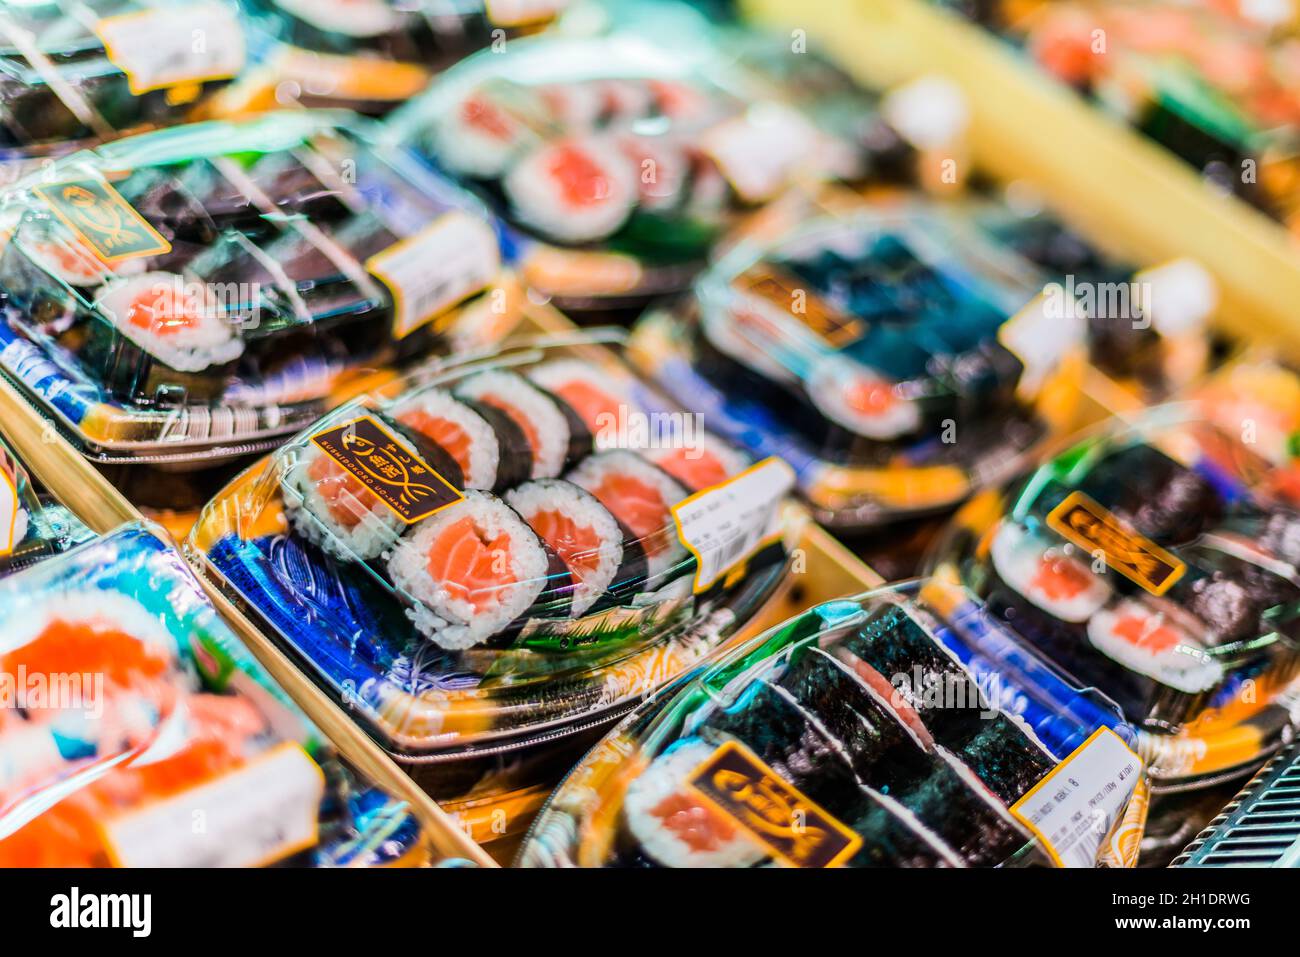 SINGAPUR - 3. MÄRZ 2020: Fertig verpacktes, verzehrfertiges Sushi, das in einem handelsüblichen Kühlschrank zum Verkauf steht Stockfoto